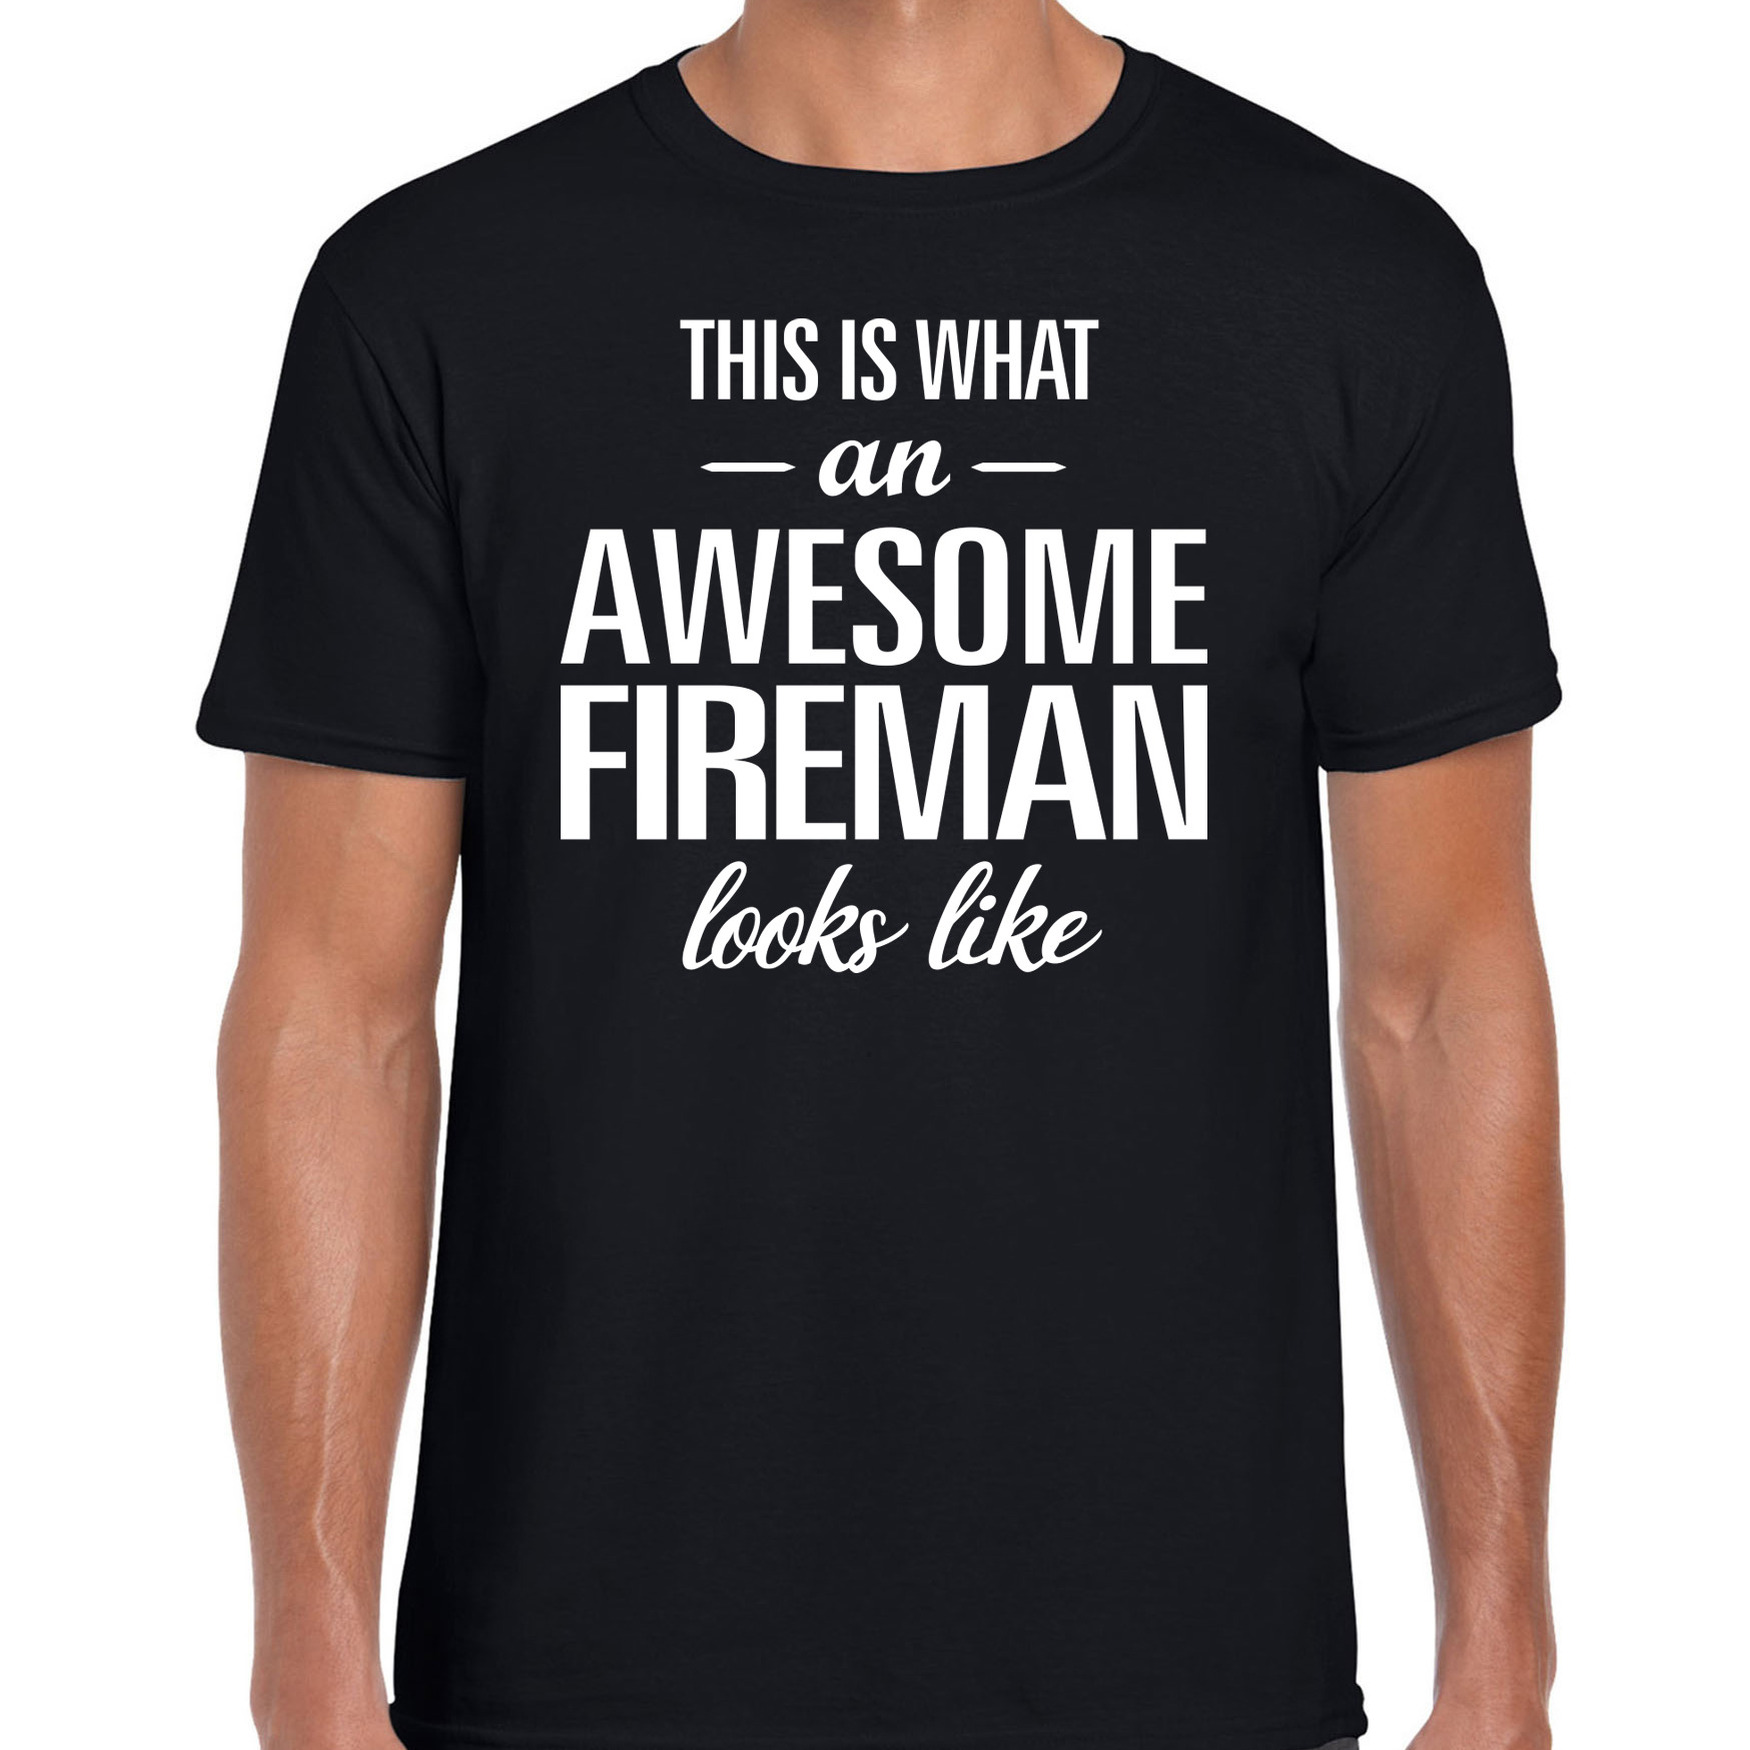 Awesome fireman-geweldige brandweerman cadeau t-shirt zwart voor heren